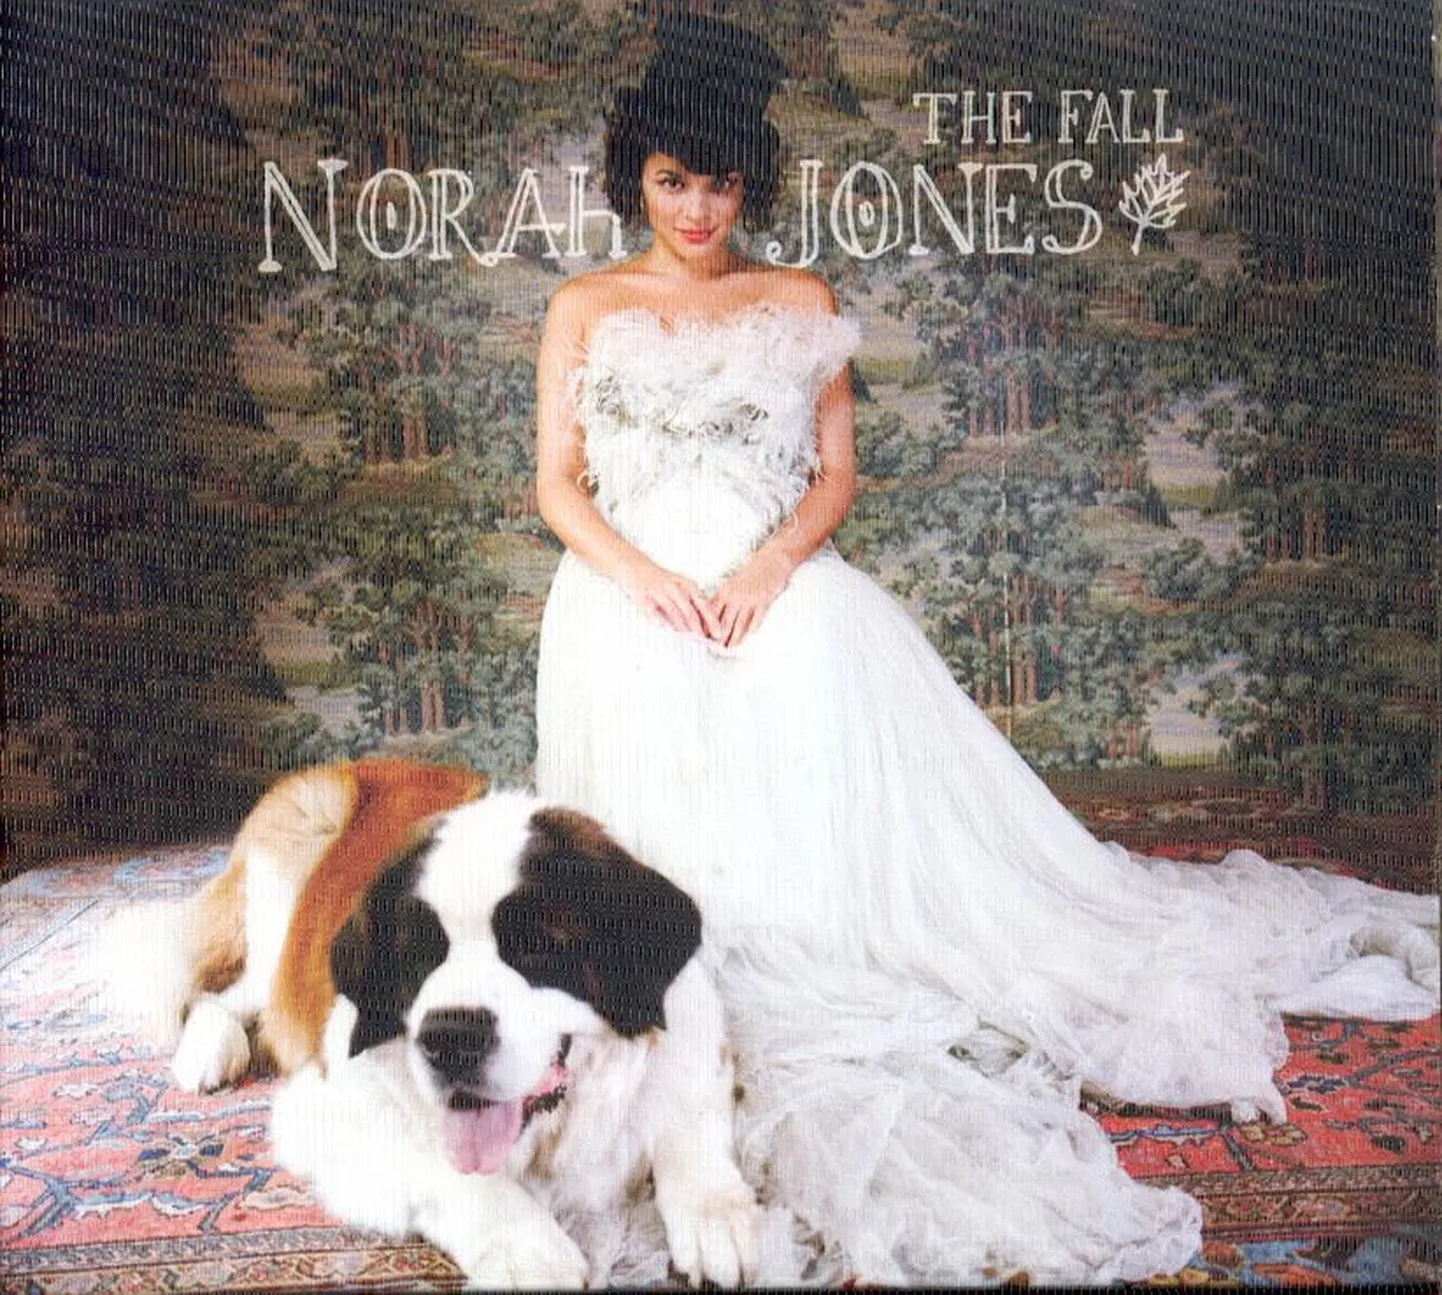 Norah Jones “The Fall”.